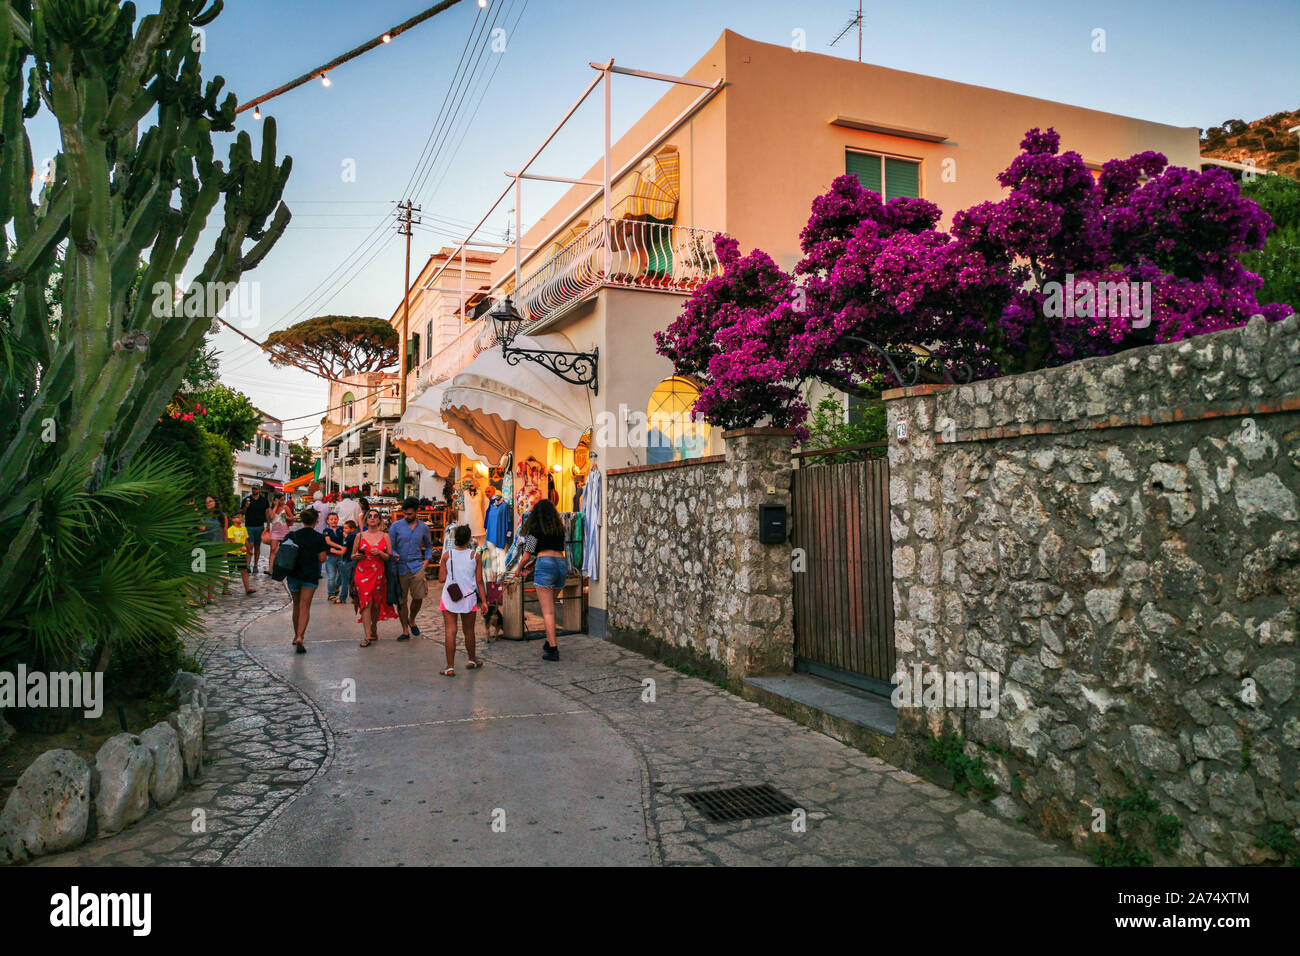 Ancapri animée rue principale avec des boutiques locales et des décorations de fleurs colorées. Anacapri, à l'île de Capri, Italie, juin 2019 Banque D'Images